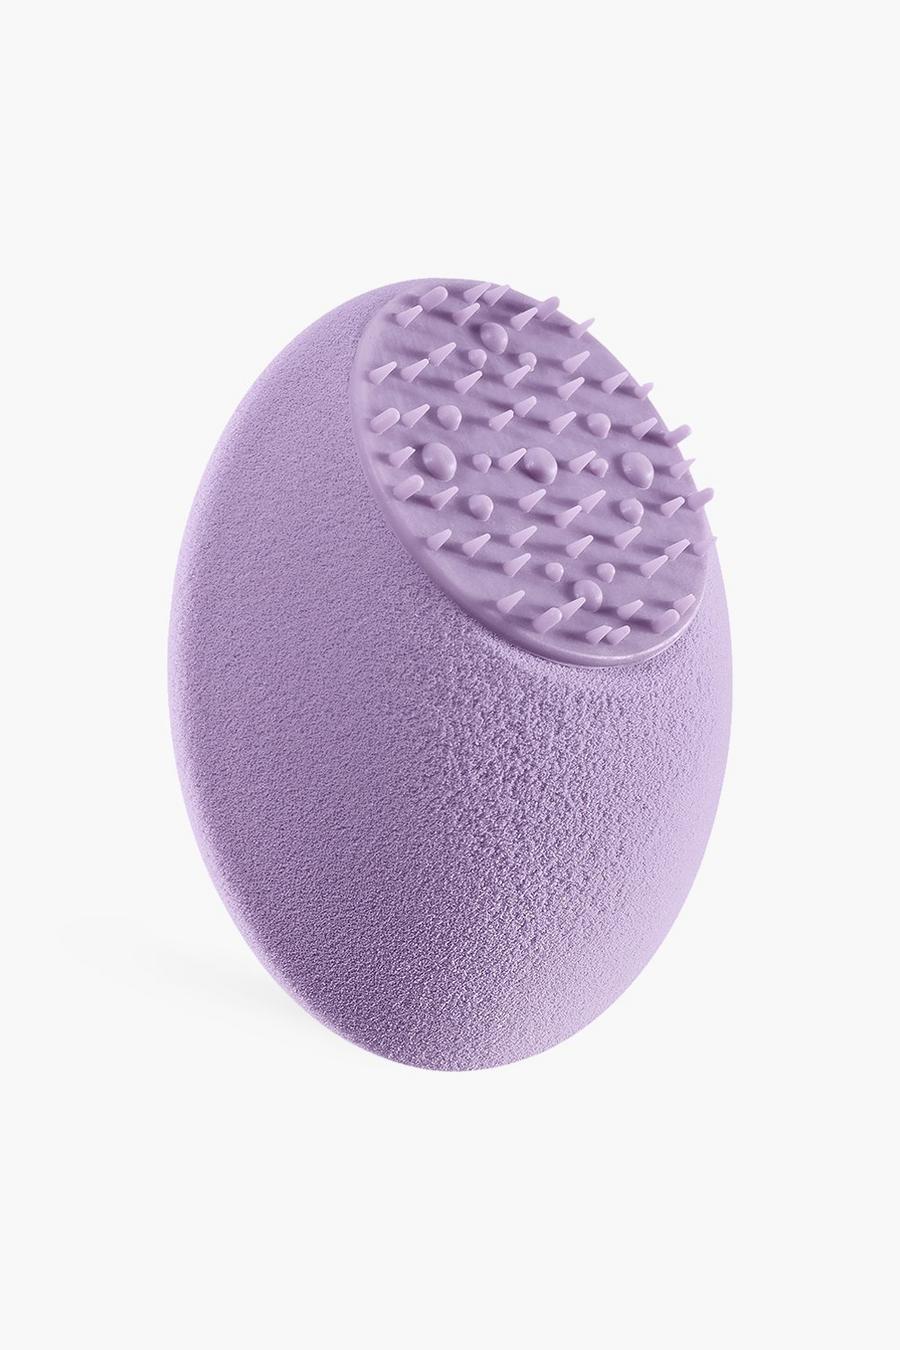 Esponja facial Miracle + esponja de Real Techniques, Lilac morado